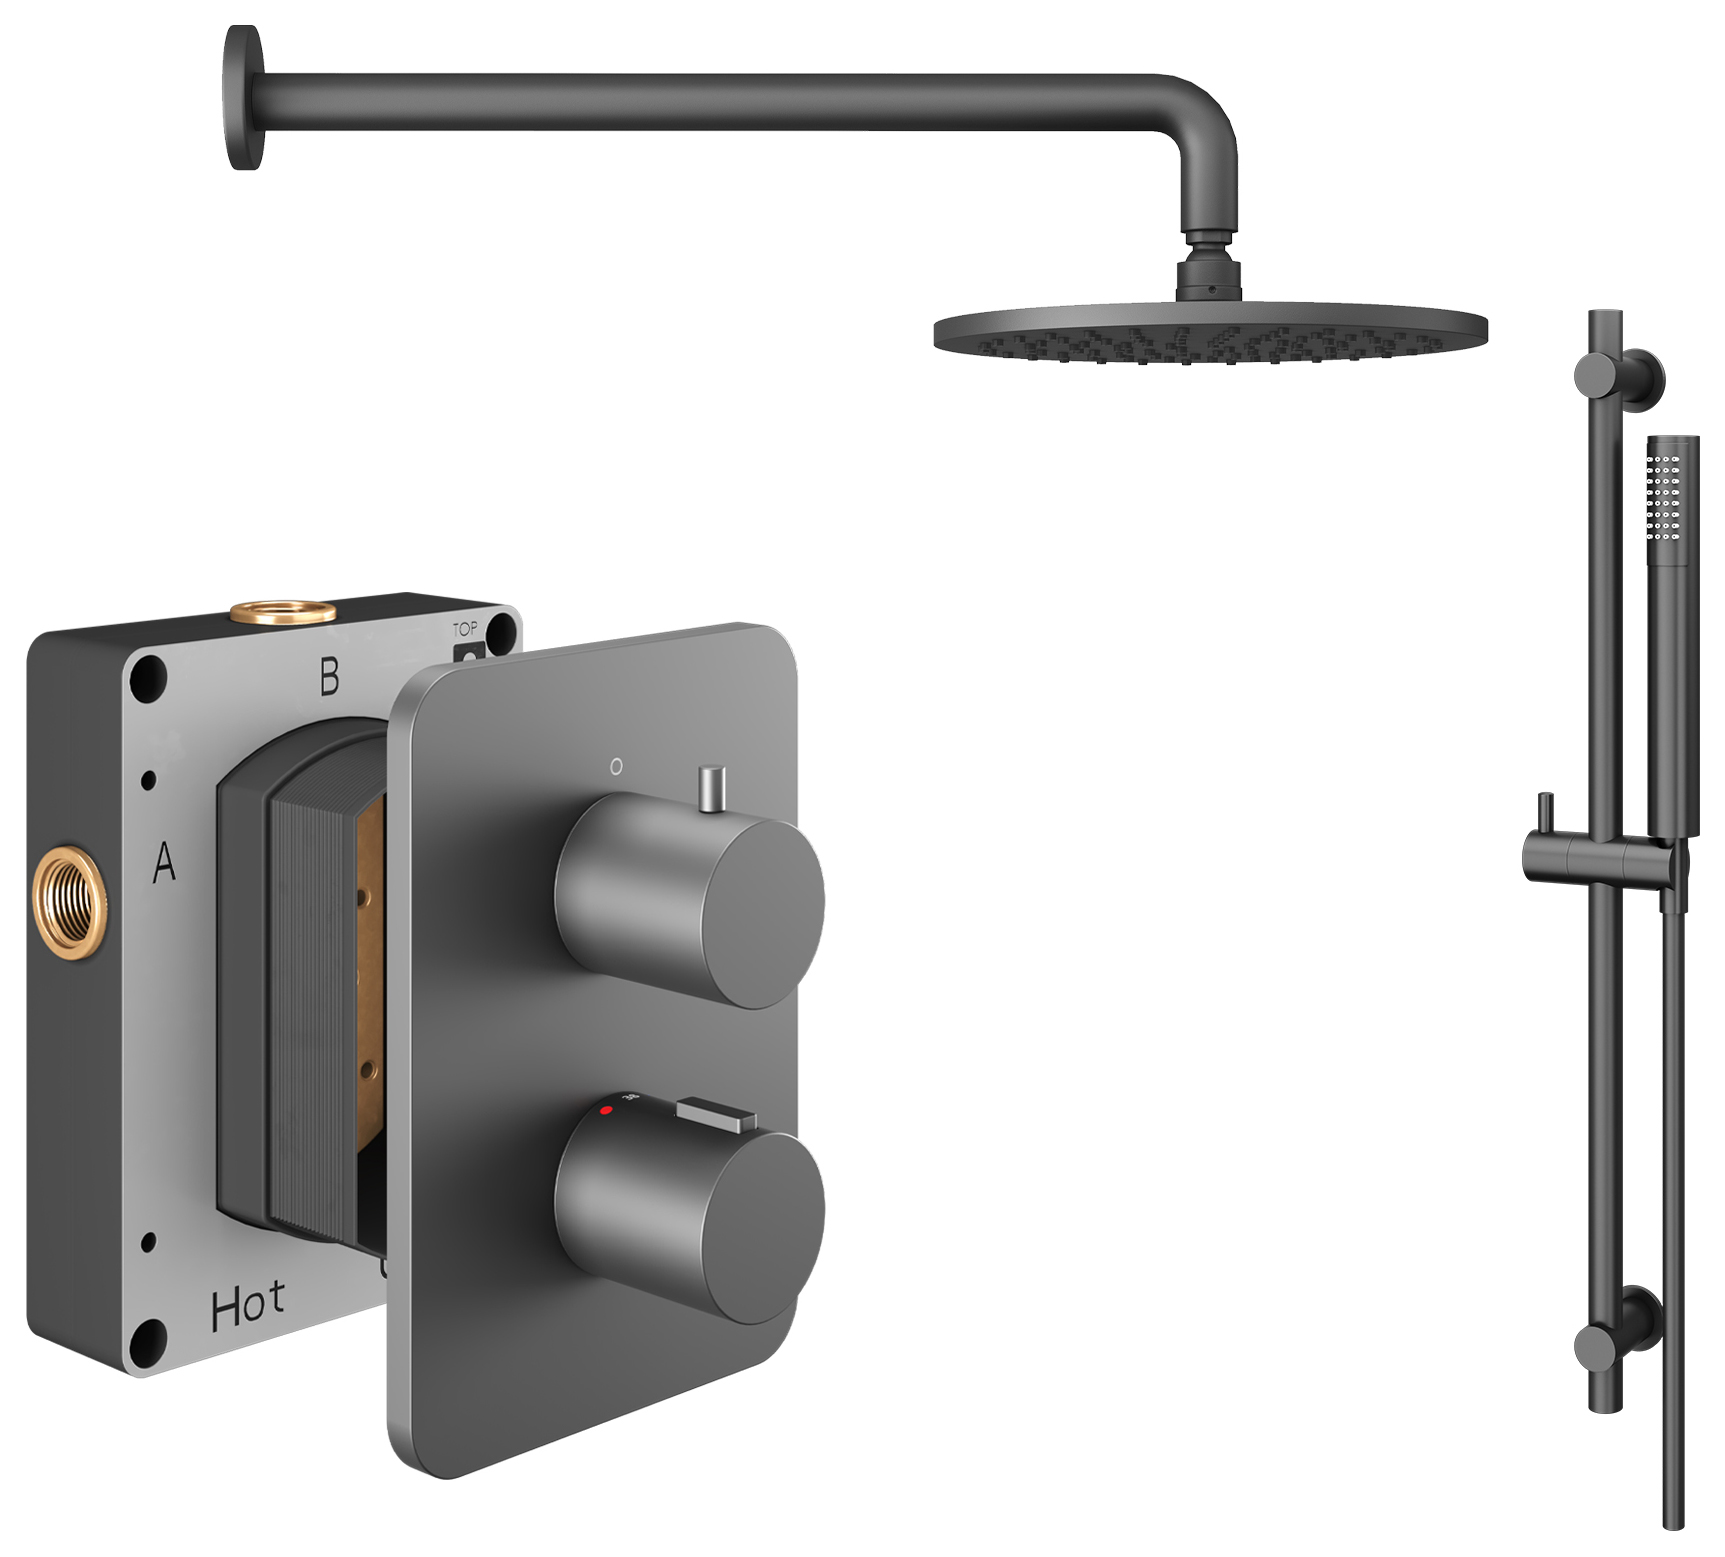 Hadleigh Recessed Dual Control Round Mixer Shower Includes Shower Valve, Shower Head & Riser Rail - Matt Anthracite